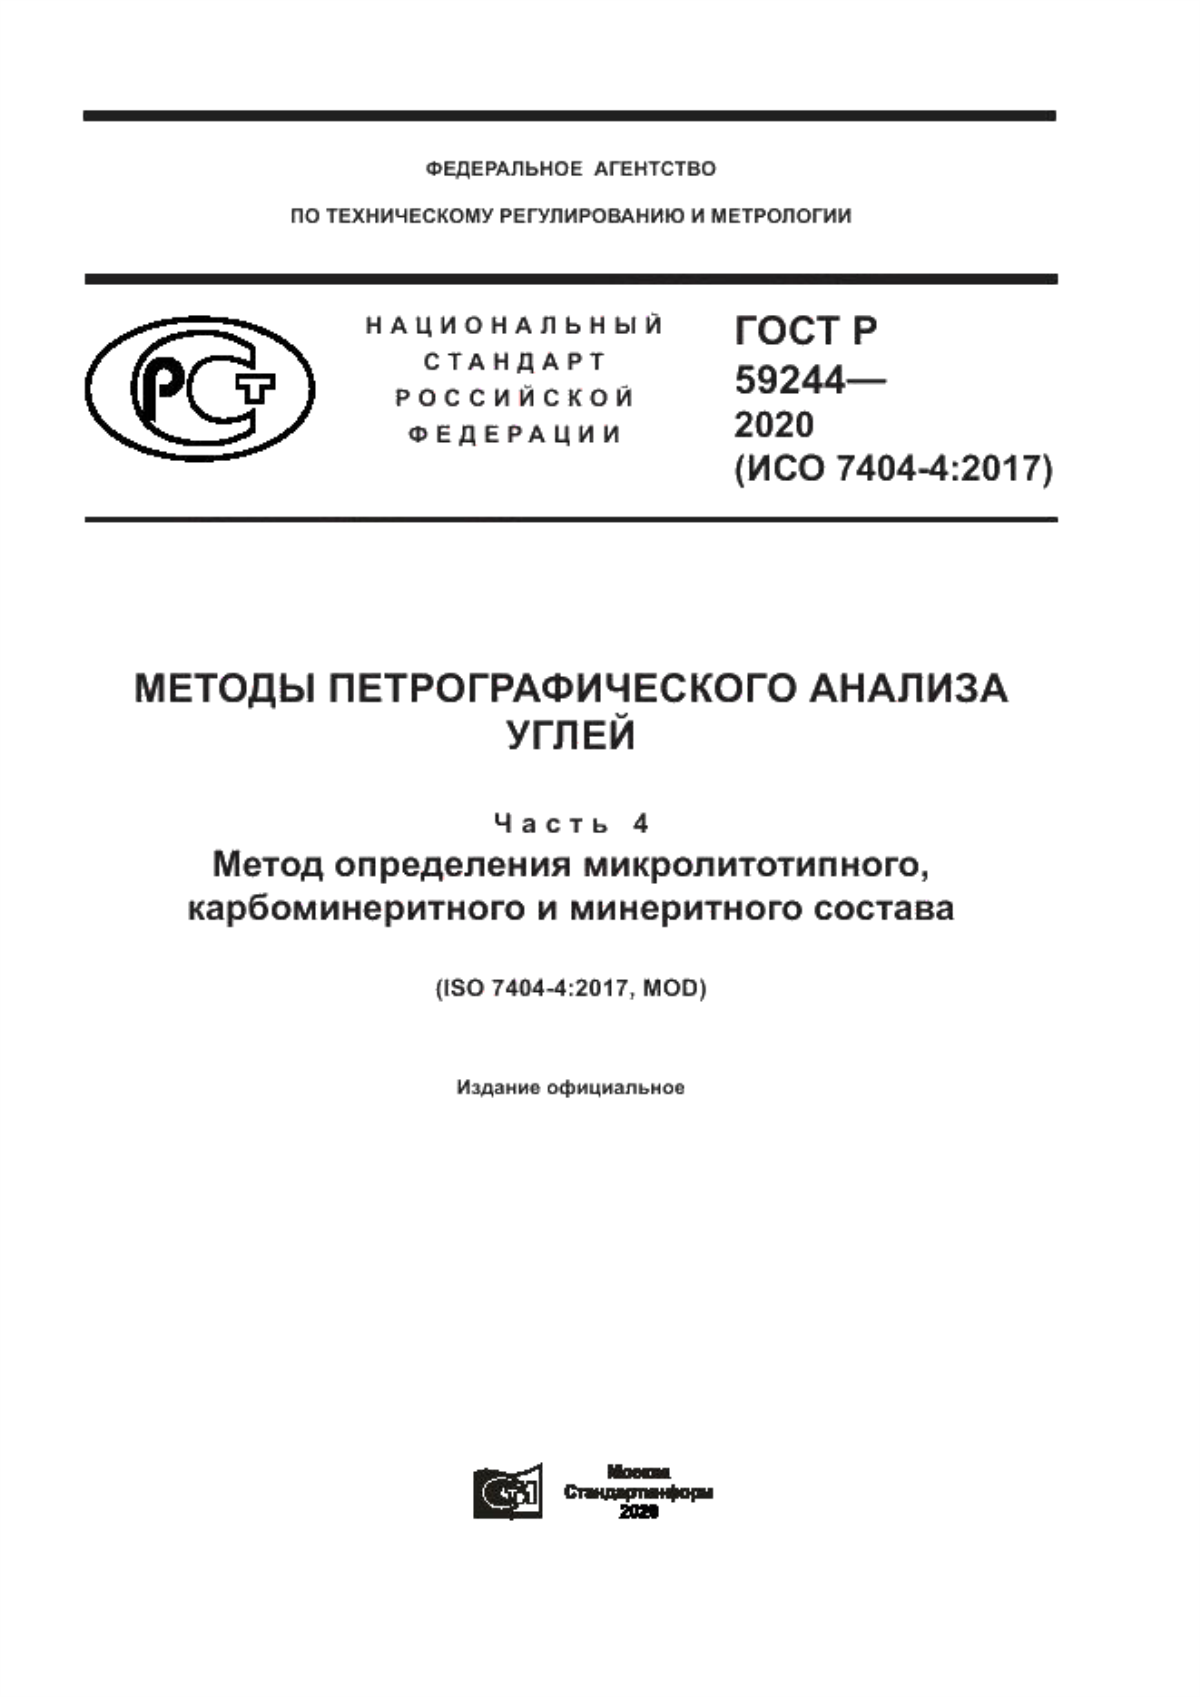 ГОСТ Р 59244-2020 Методы петрографического анализа углей. Часть 4. Метод определения микролитотипного, карбоминеритного и минеритного состава